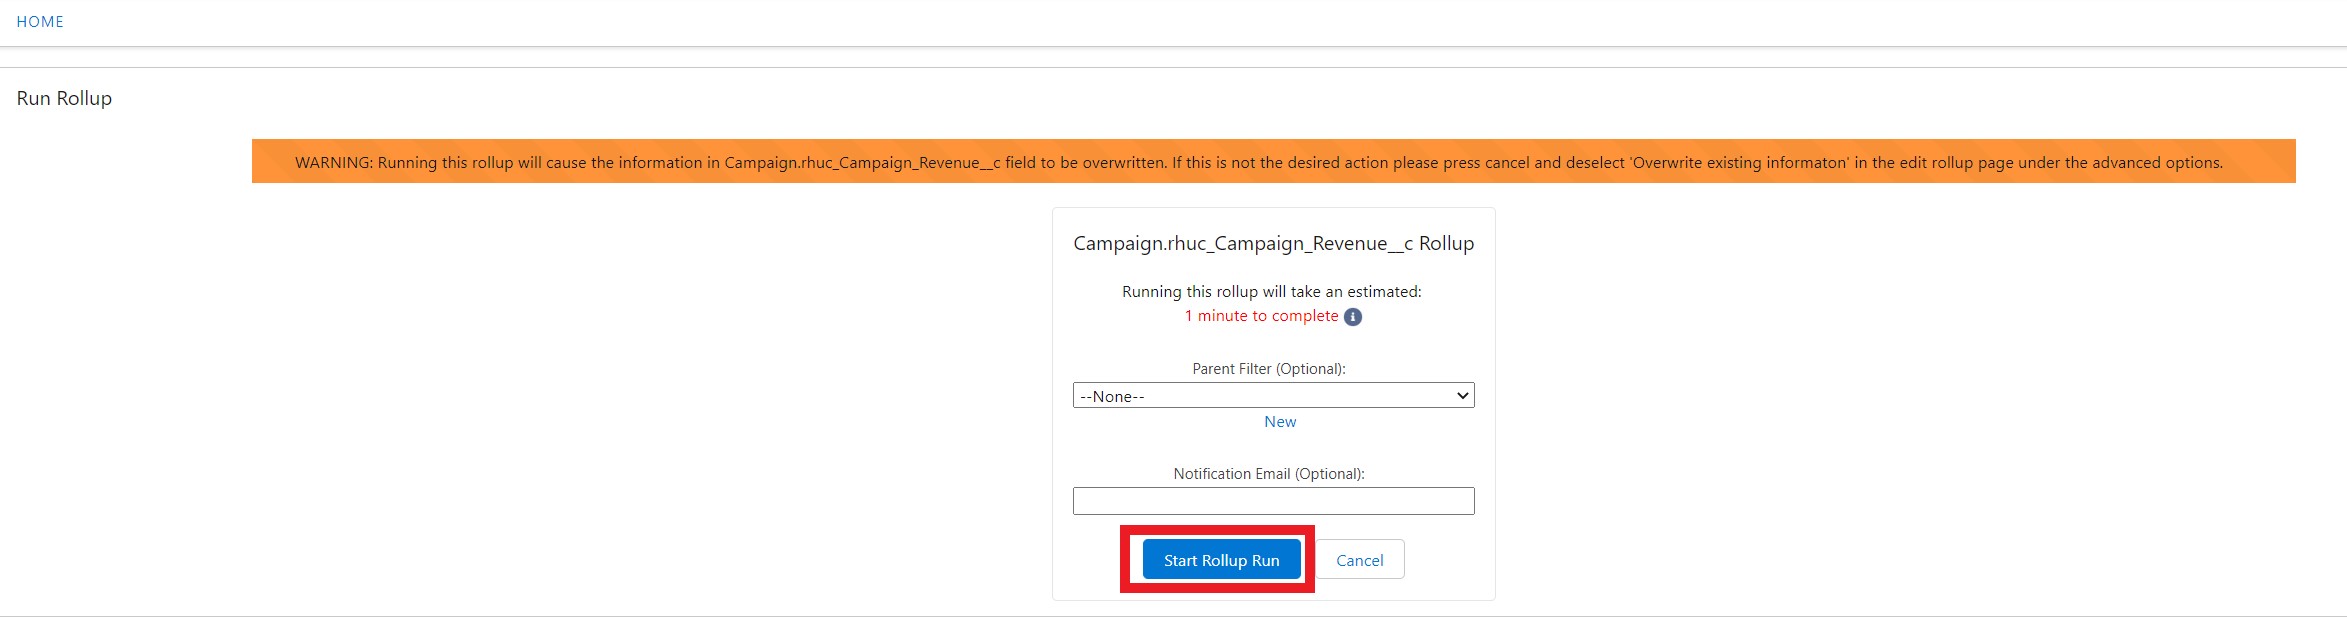 Campaign_Revenue run rollup